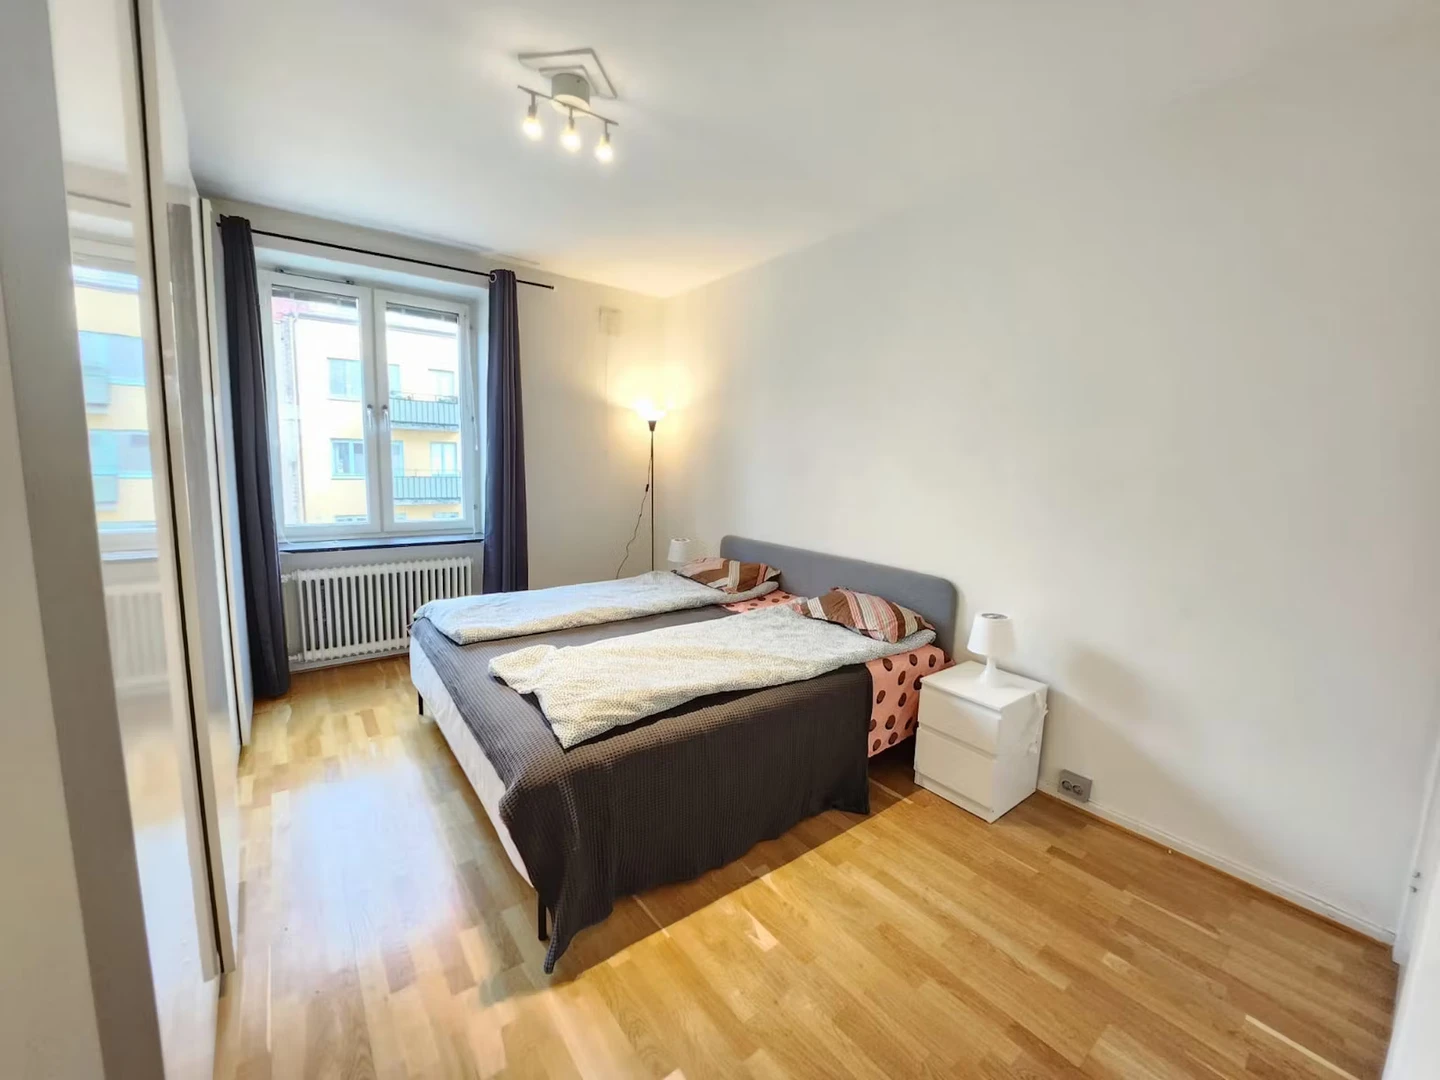 Göteborg içinde 2 yatak odalı konaklama